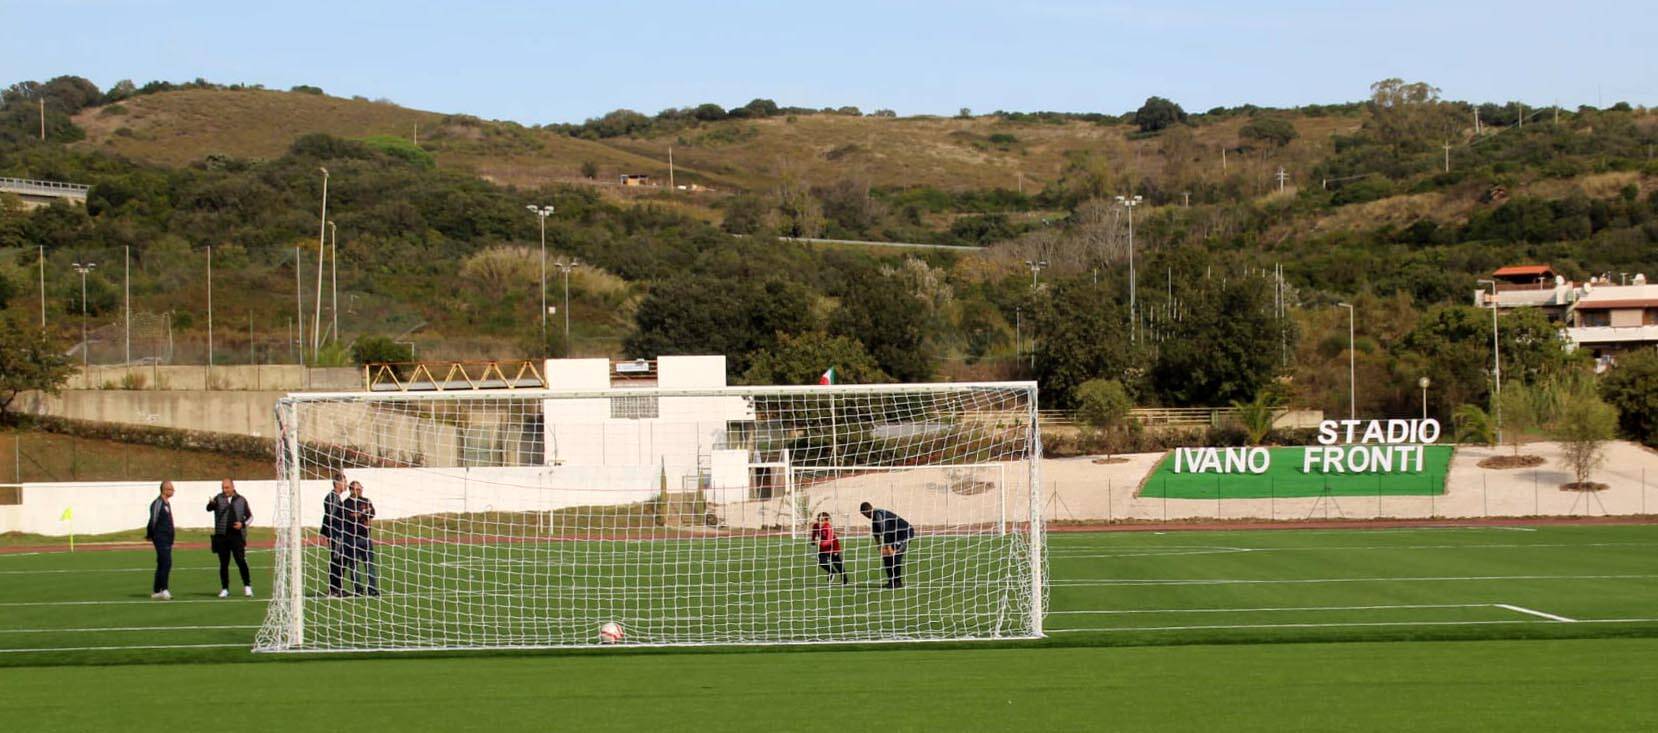 Lo sport a Santa Marinella torna protagonista: inaugurato il nuovo stadio comunale